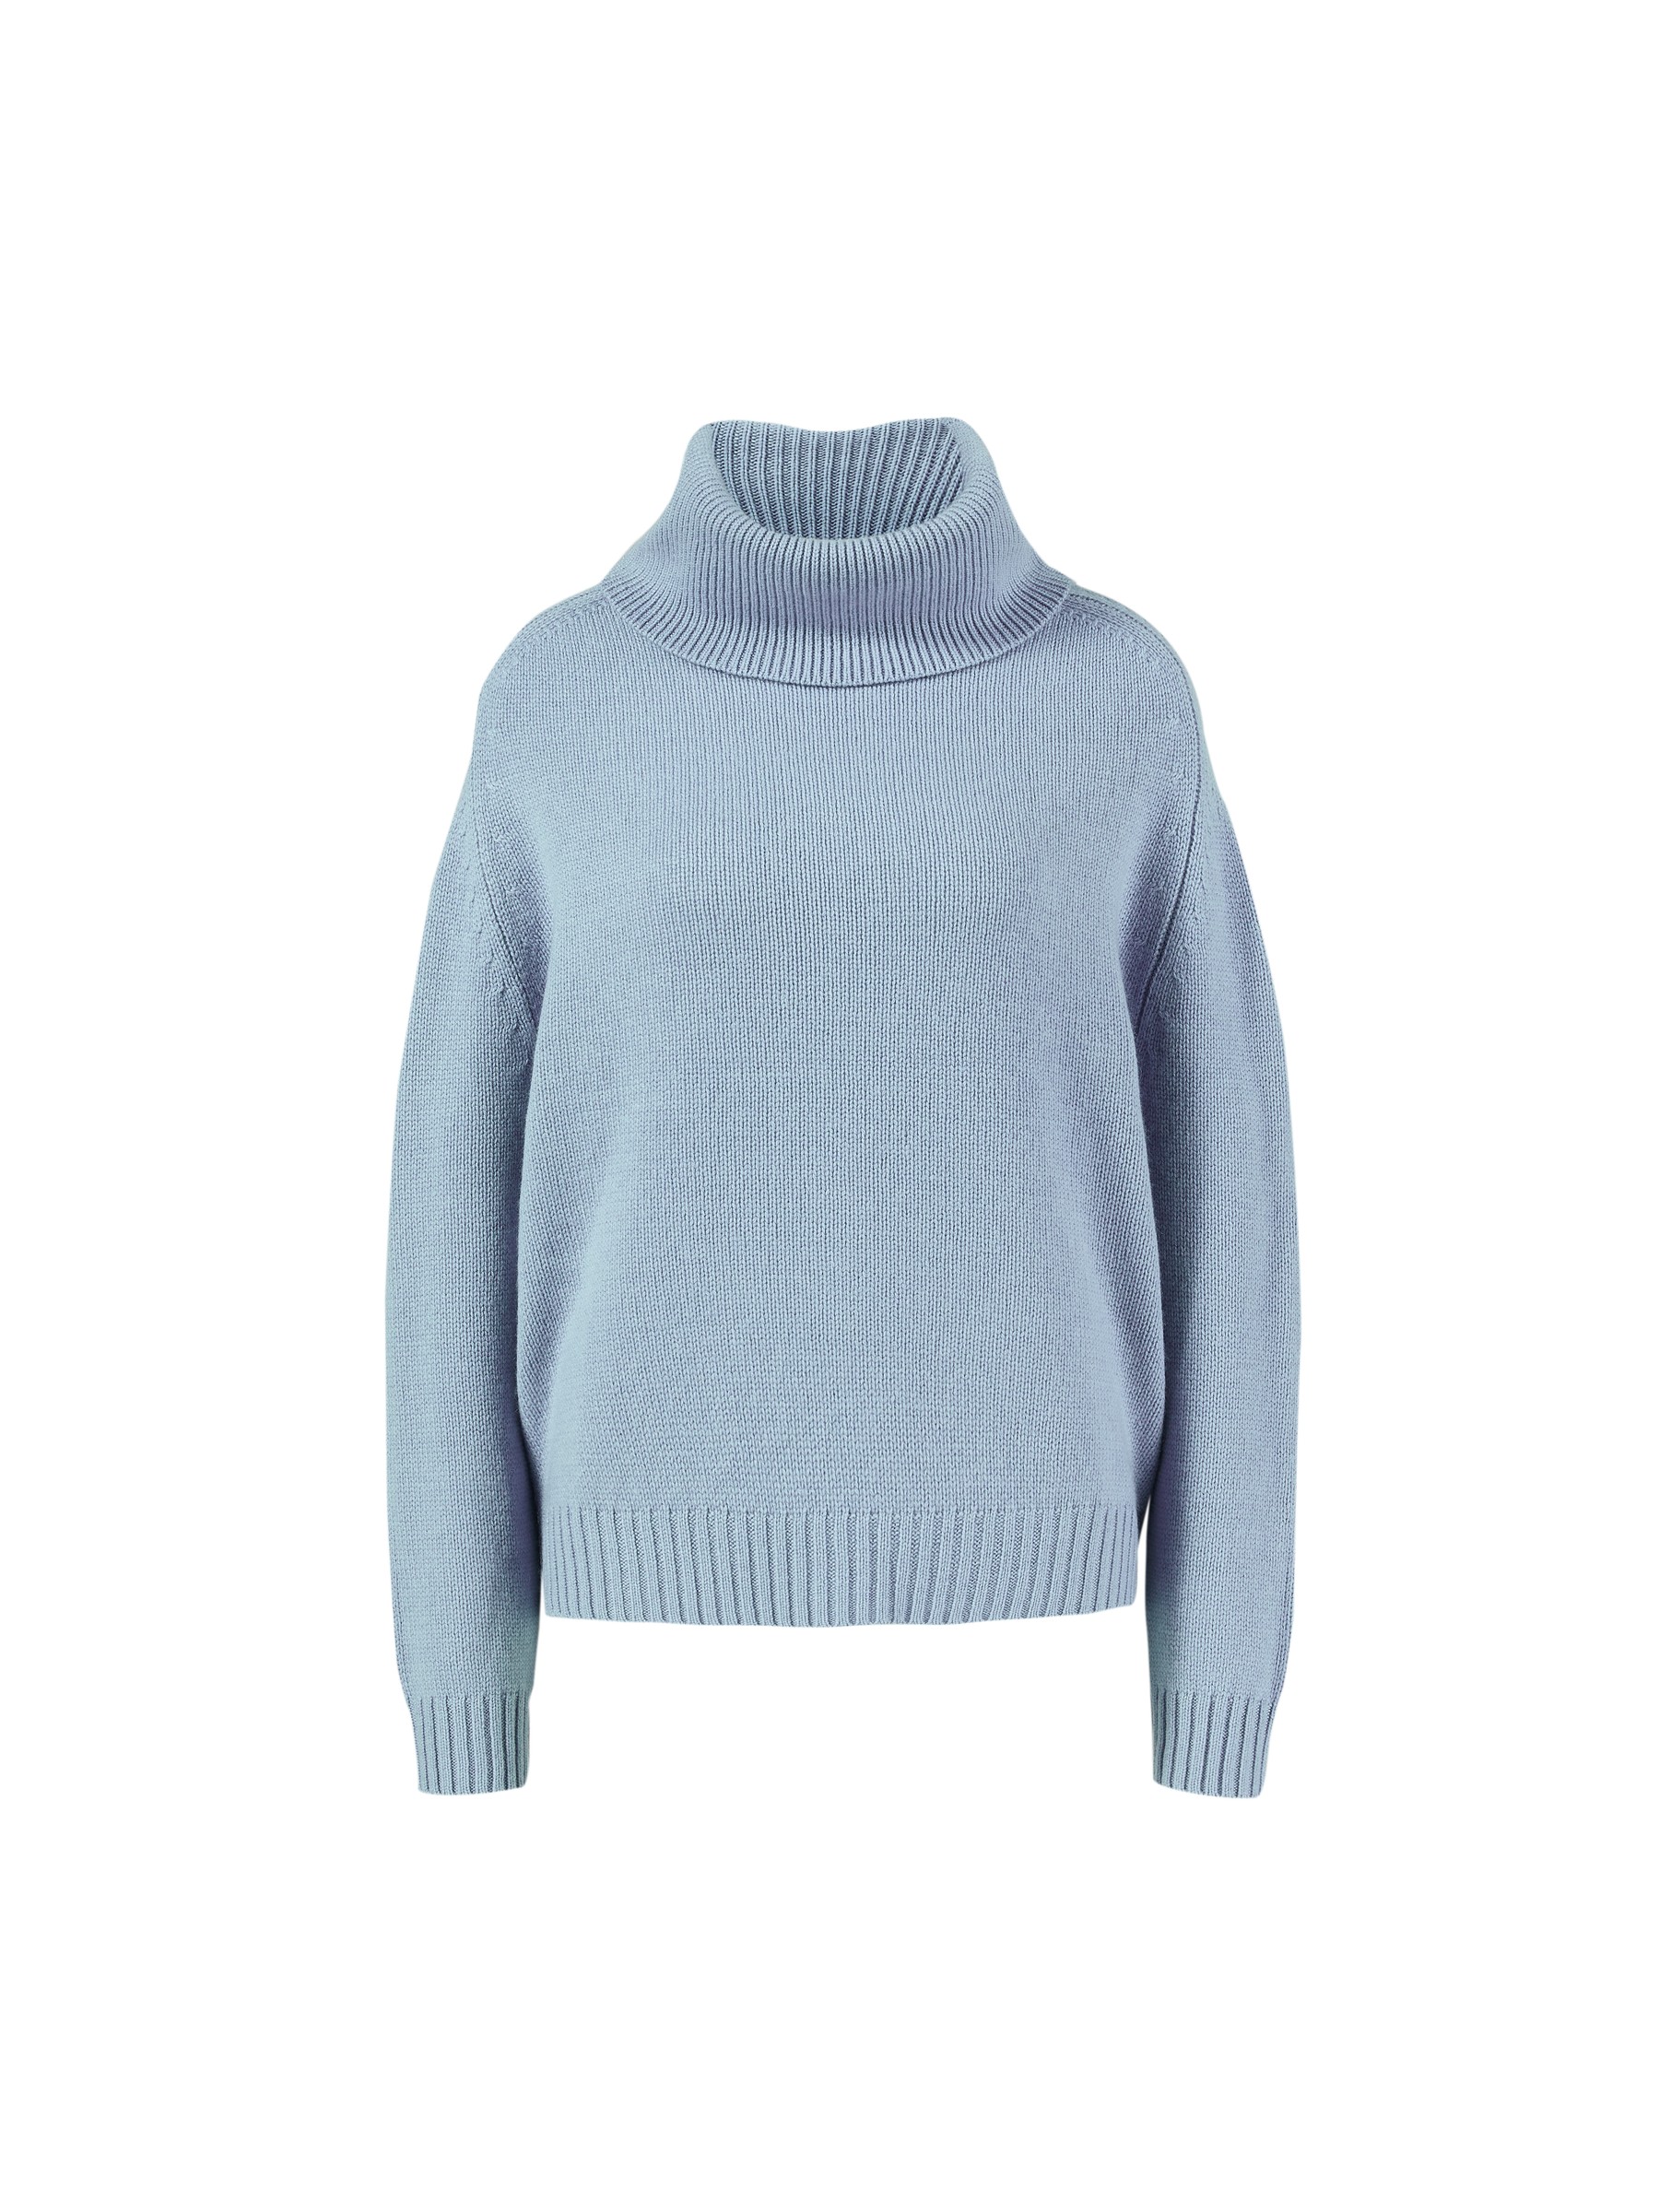 Bestemt reparatøren Borger Allude Cashmere Turtleneck Sweater Blue | Kashmir og Strik